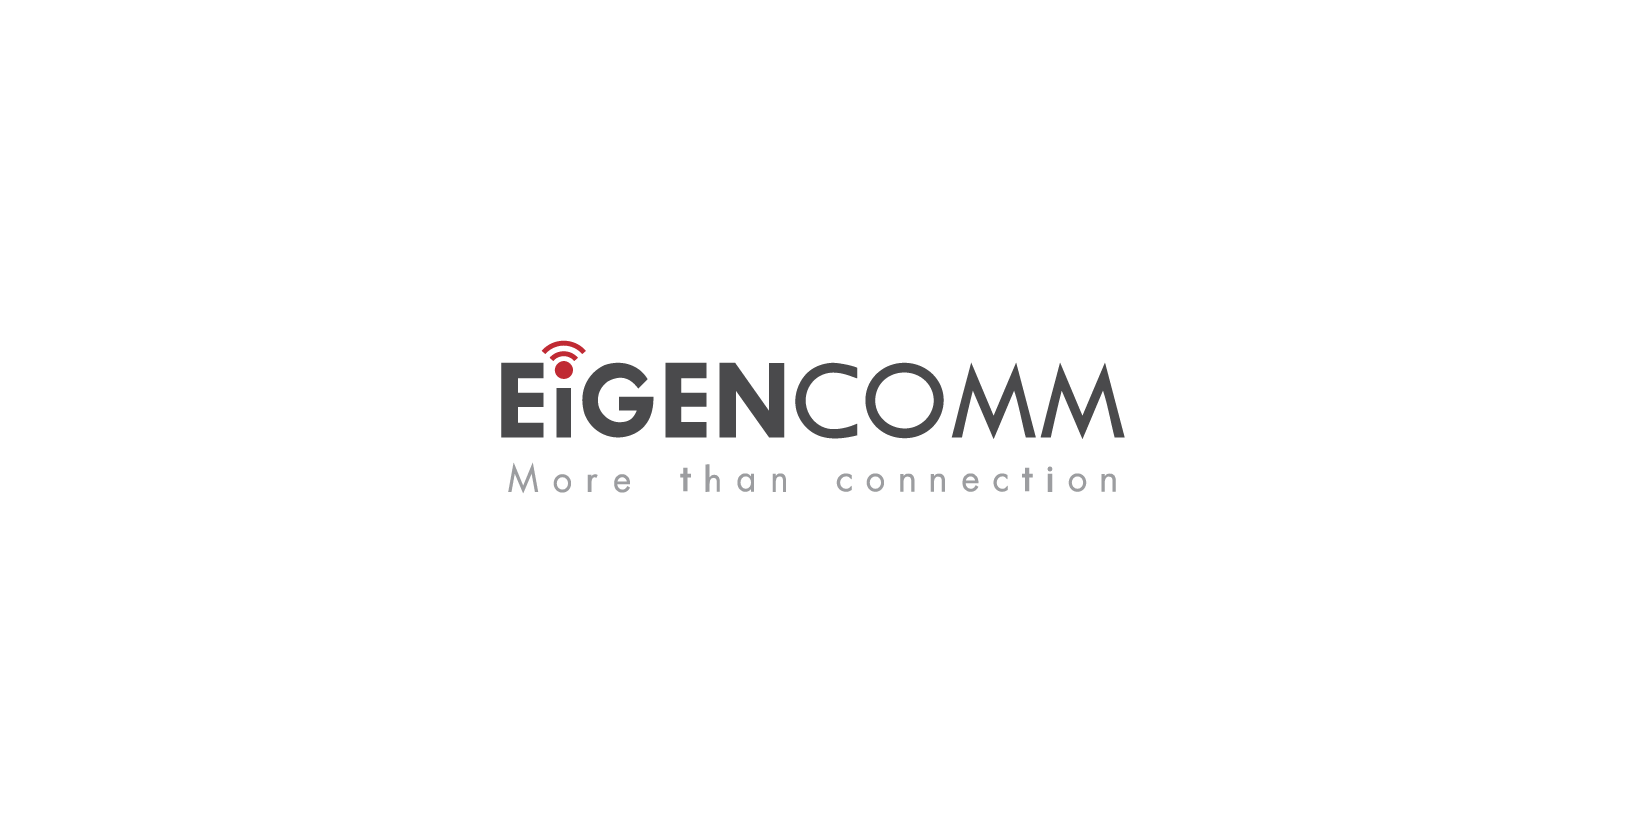 VisionFund Portfolio Company Eigencomm's Logo